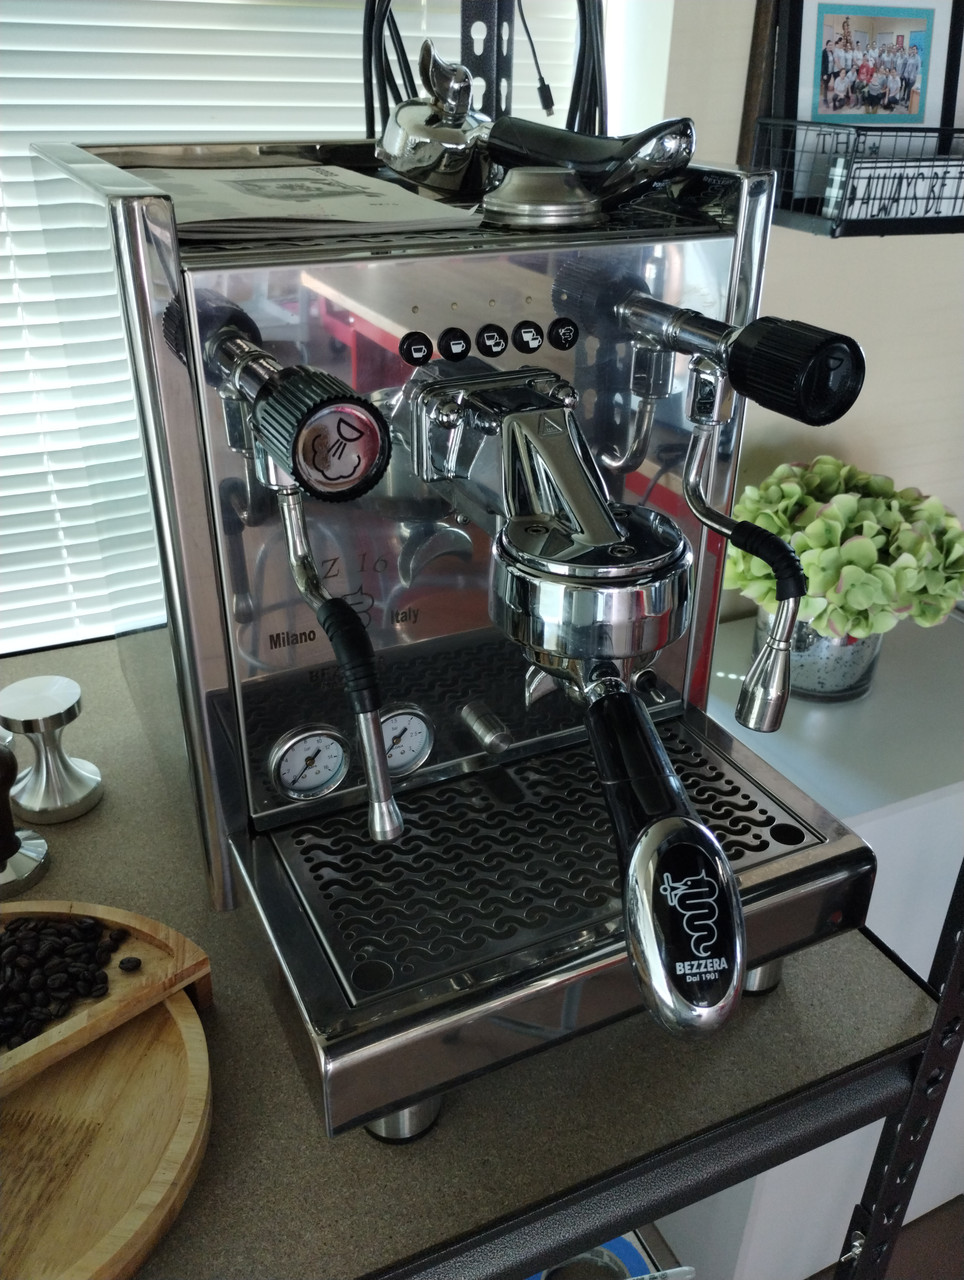 Bezzera - Espresso coffee machines since 1901